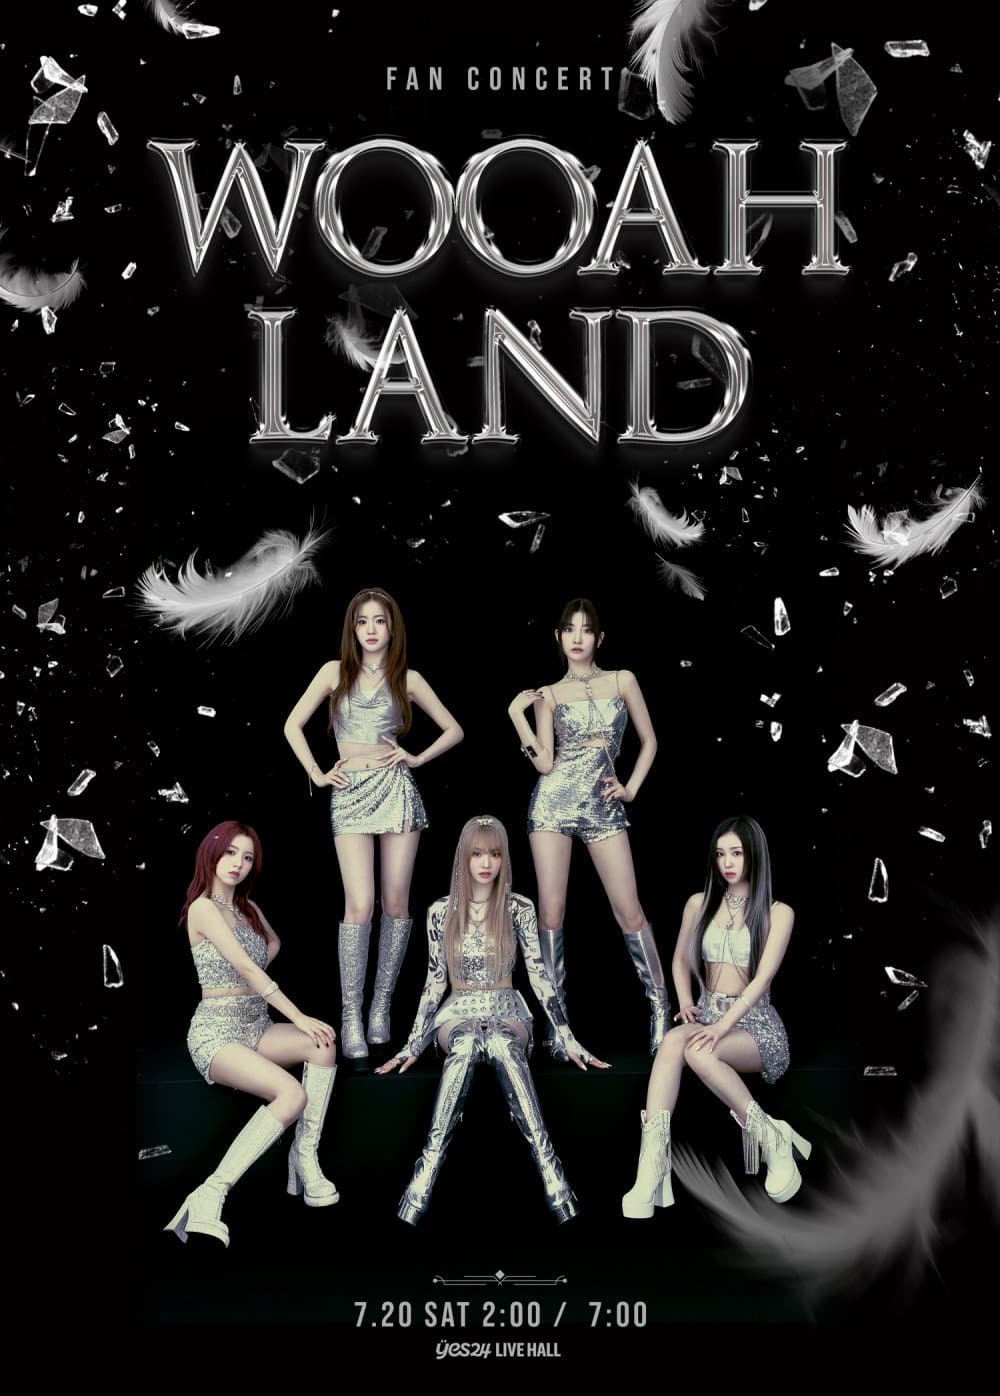 WOOAH проведут свой первый фан-концерт «WOOAH-LAND» в июле